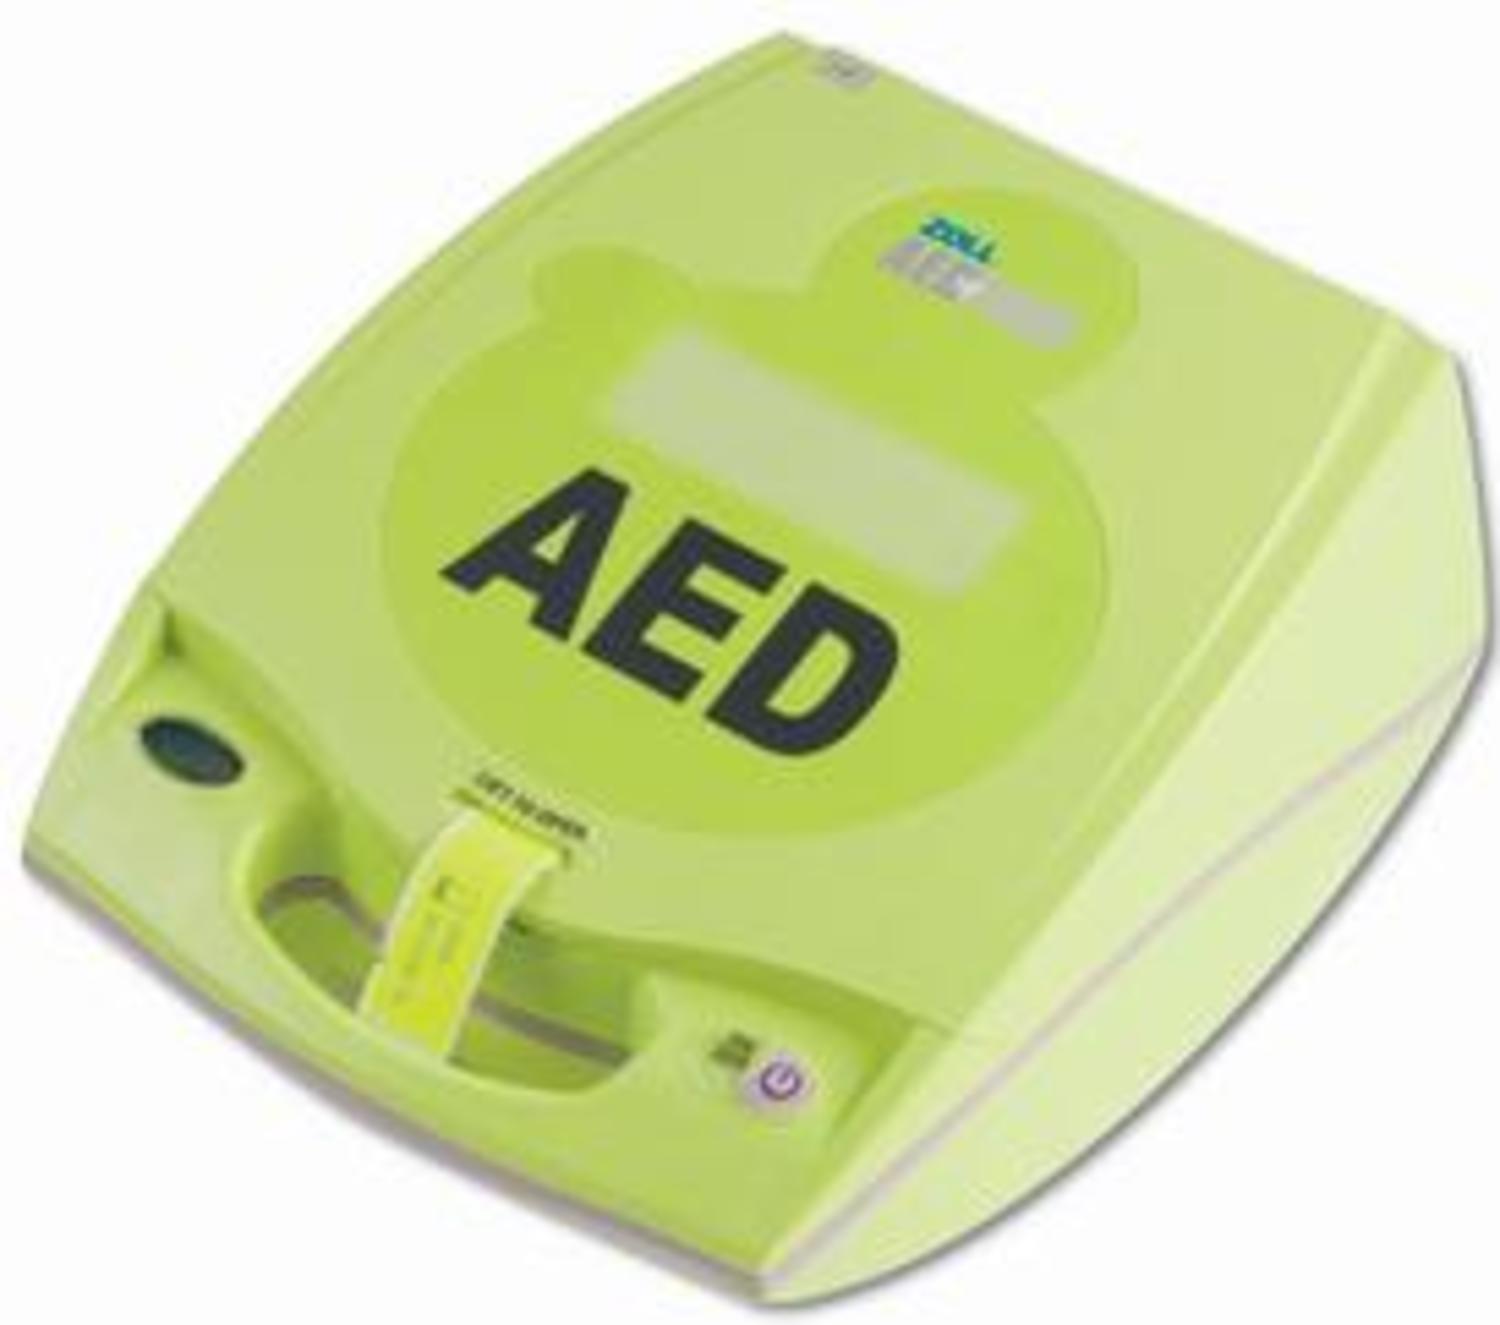 저출력심장충격기 ZOLL AED Plus